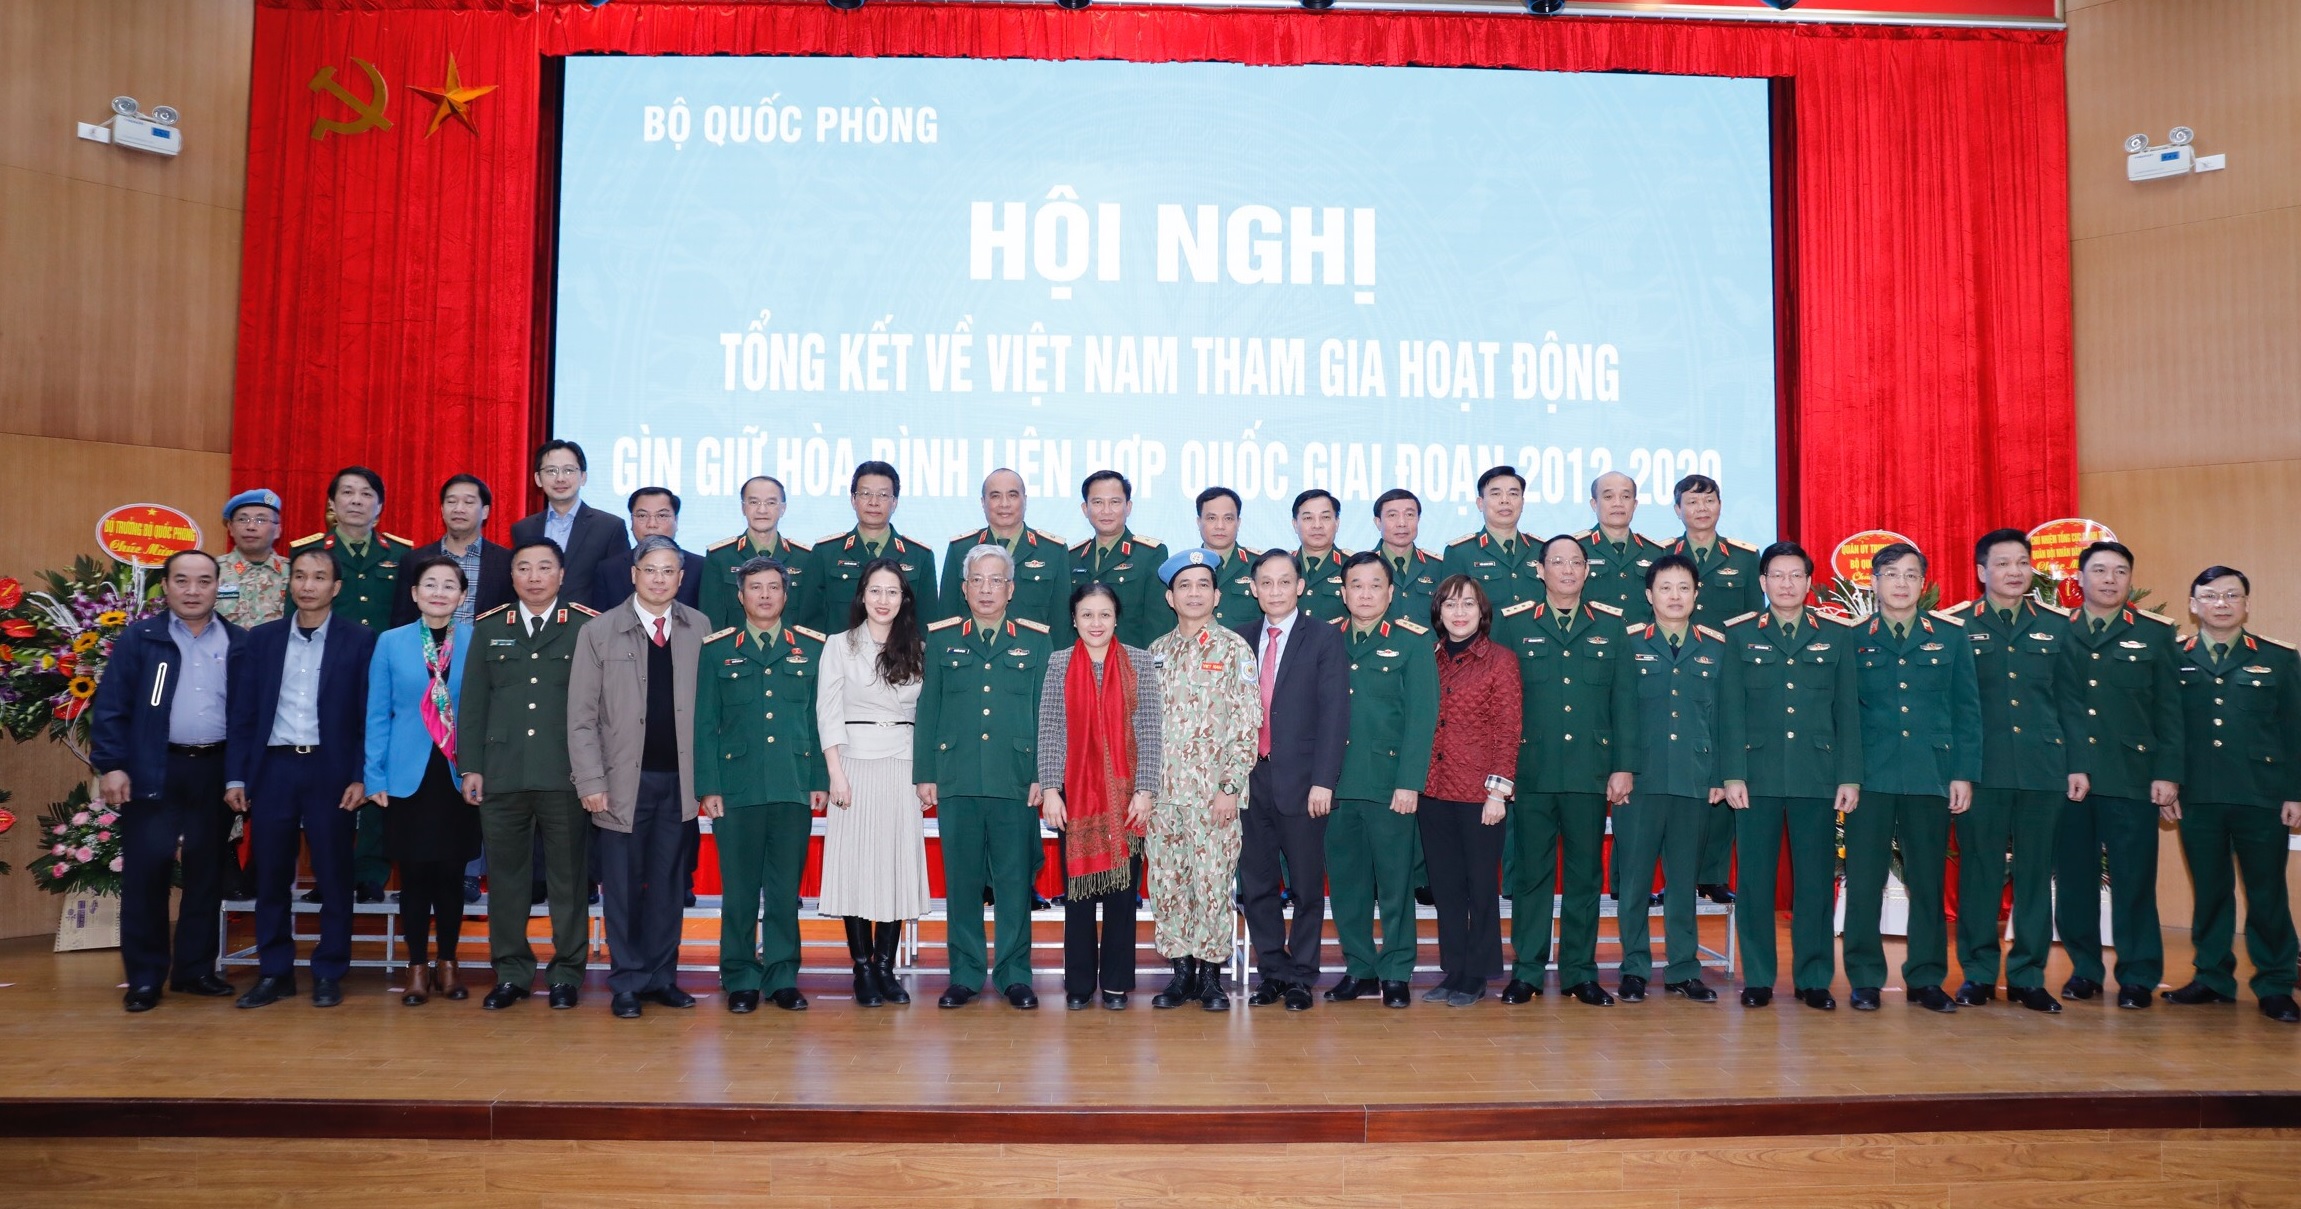 Thượng tướng Hoàng Xuân Chiến, Thứ trưởng BQP chụp ảnh lưu niệm cùng các đại biểu tại Hội nghị Tổng kết Việt Nam tham gia hoạt động GGHB LHQ giai đoạn 2012-2020